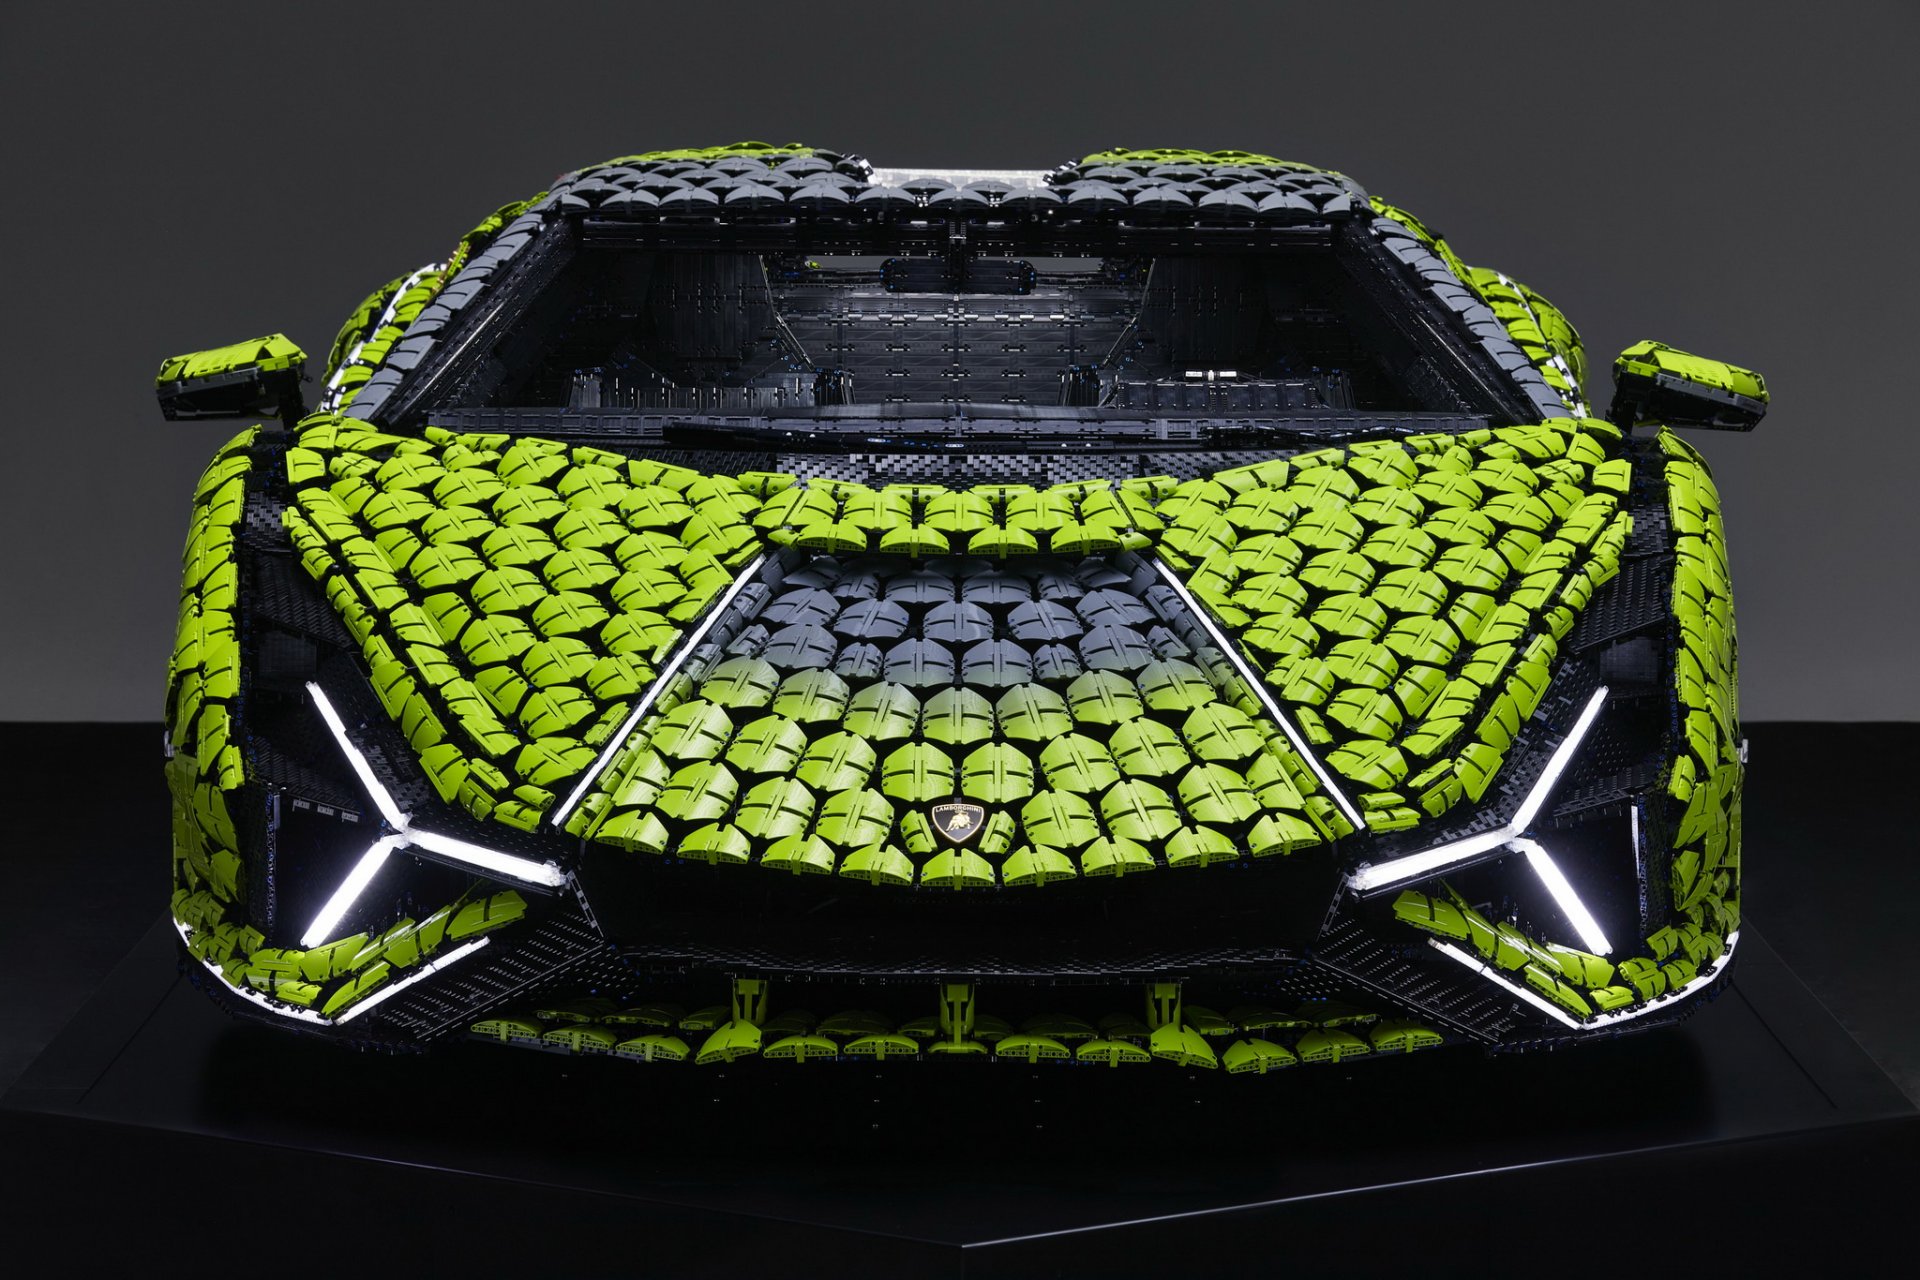 น่าเอาไปจอดที่บ้าน! LEGO Lamborghini Sián FKP 37 ขนาดเท่ารถคันจริงด้วยชิ้นงานกว่า 400,000 ชิ้น